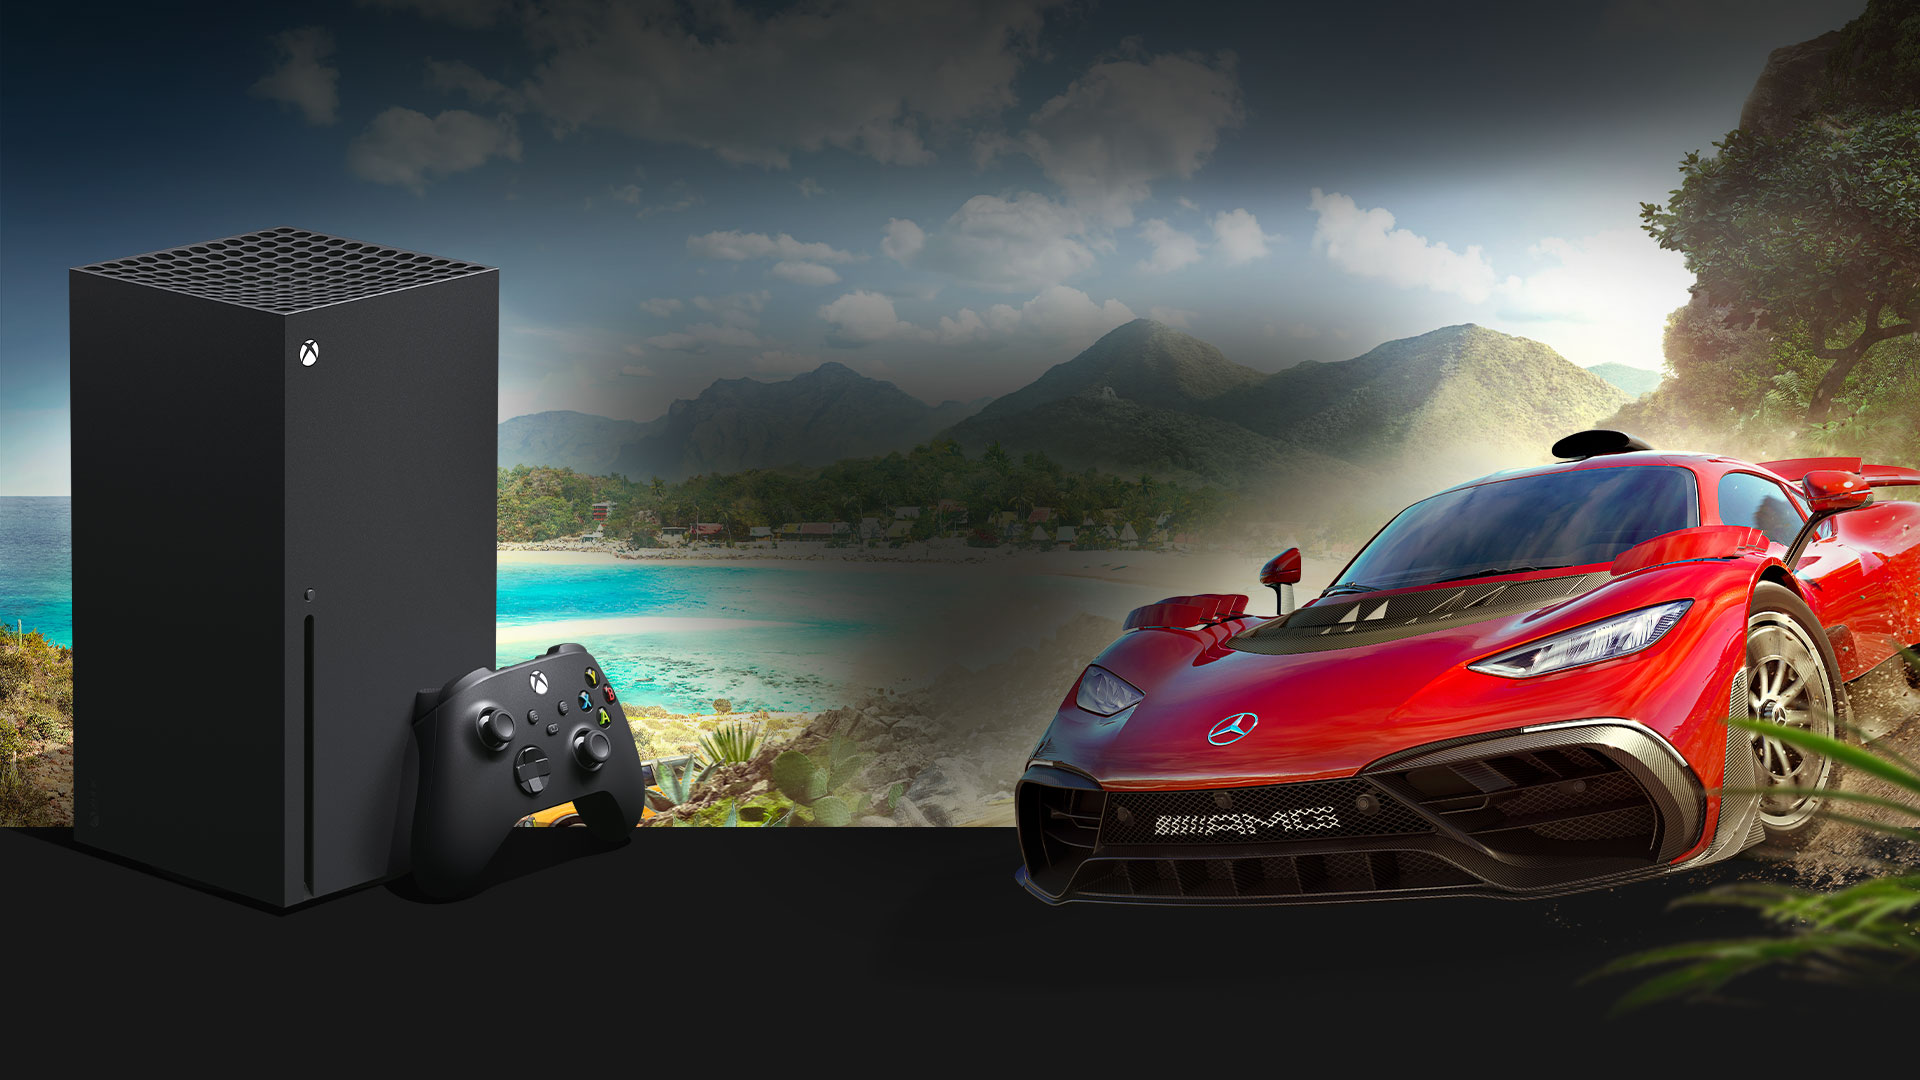 Refinamiento Medieval Valiente Pack Xbox Series X – Forza Horizon 5 | Xbox